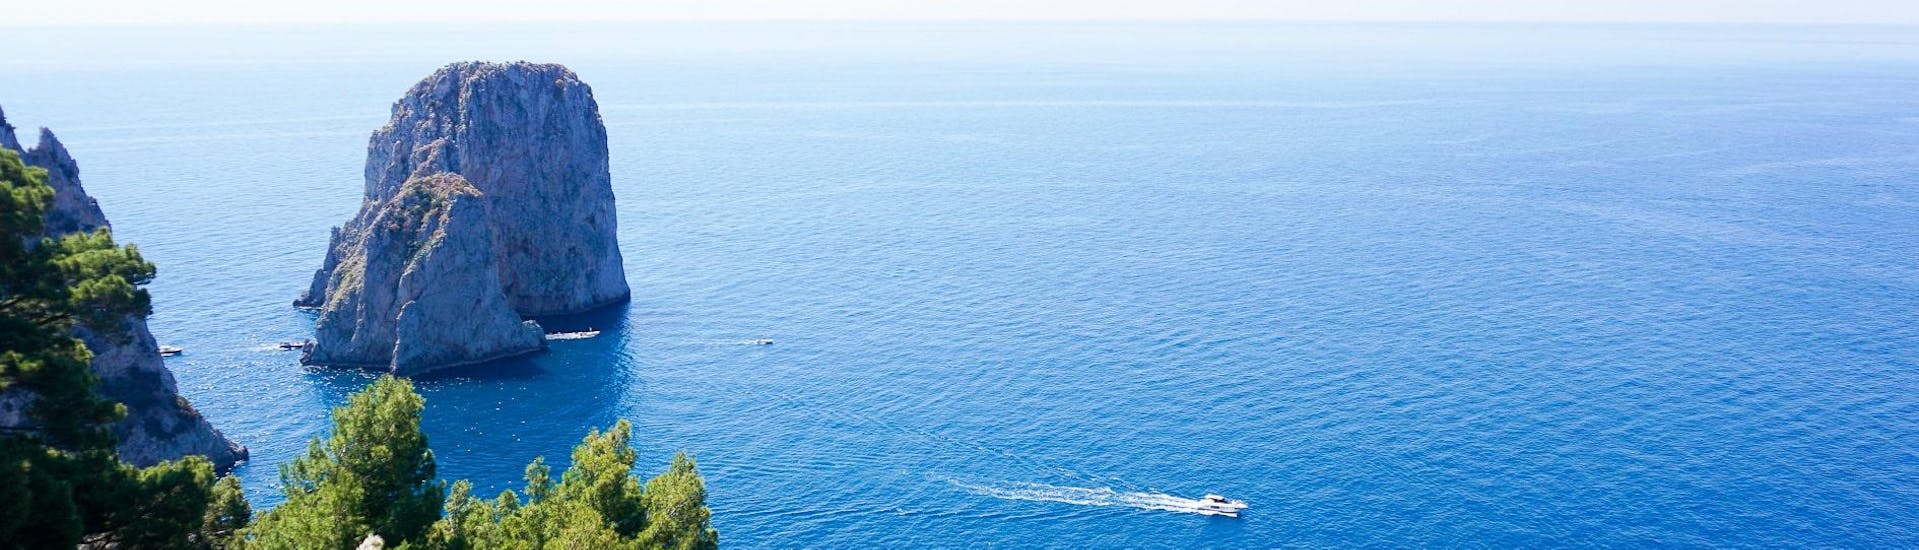 Ideales Wetter für die Halbtägige Bootstour von Sorrent nach Capri + Blaue Grotte mit You Know! Boat Sorrento.